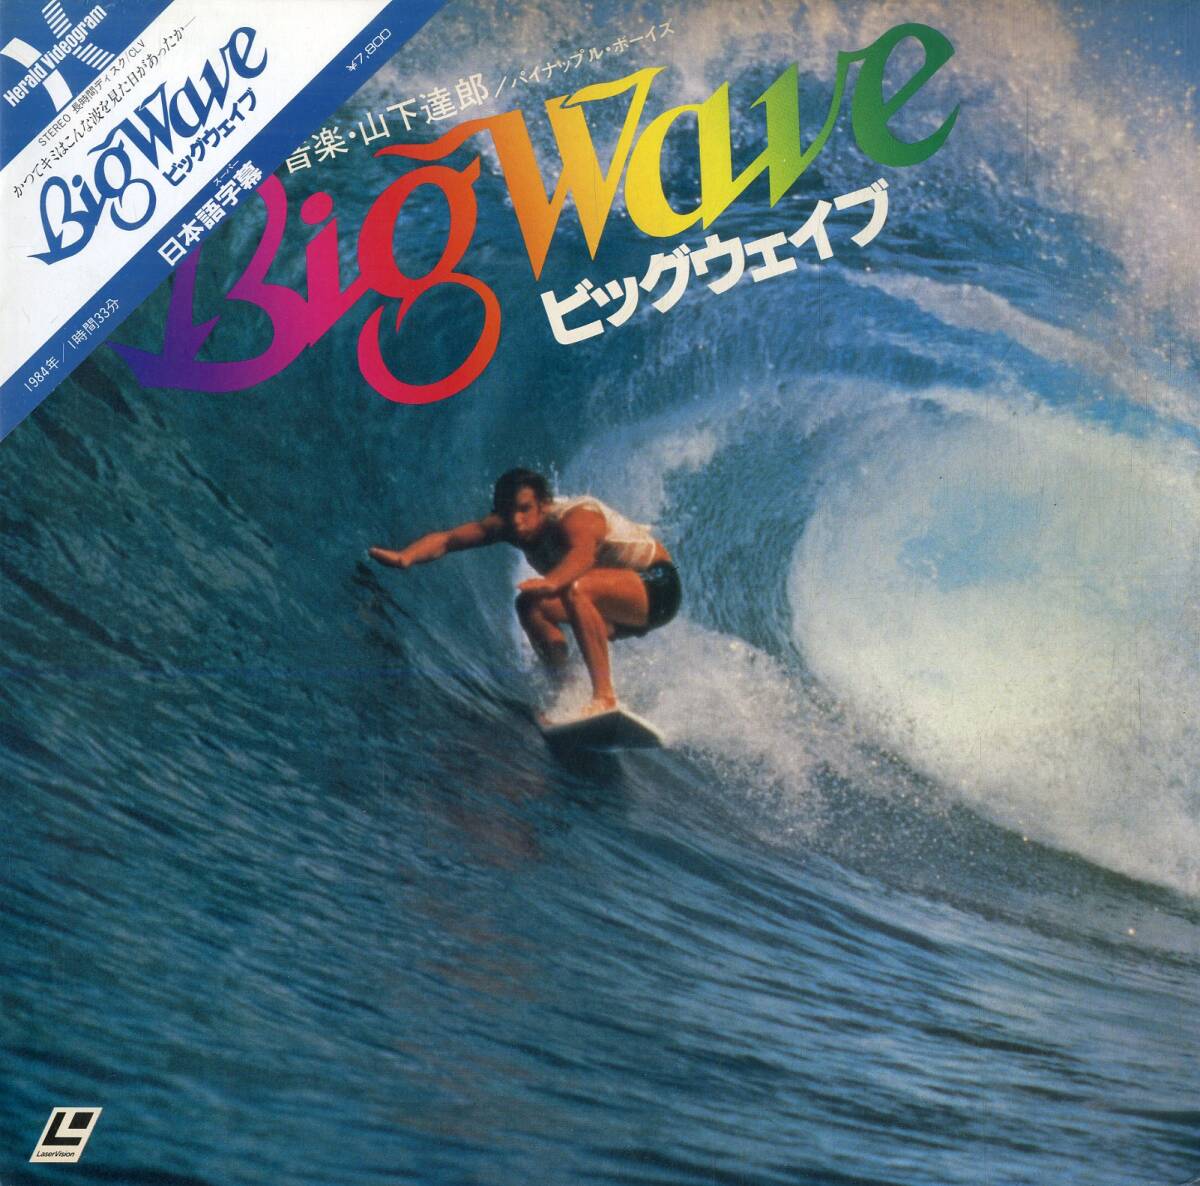 B00178141/LD/山下達郎 / パイナップル・ボーイズ「ビック・ウェイブ Big Wave (1984年・FY113-25HD)」_画像1